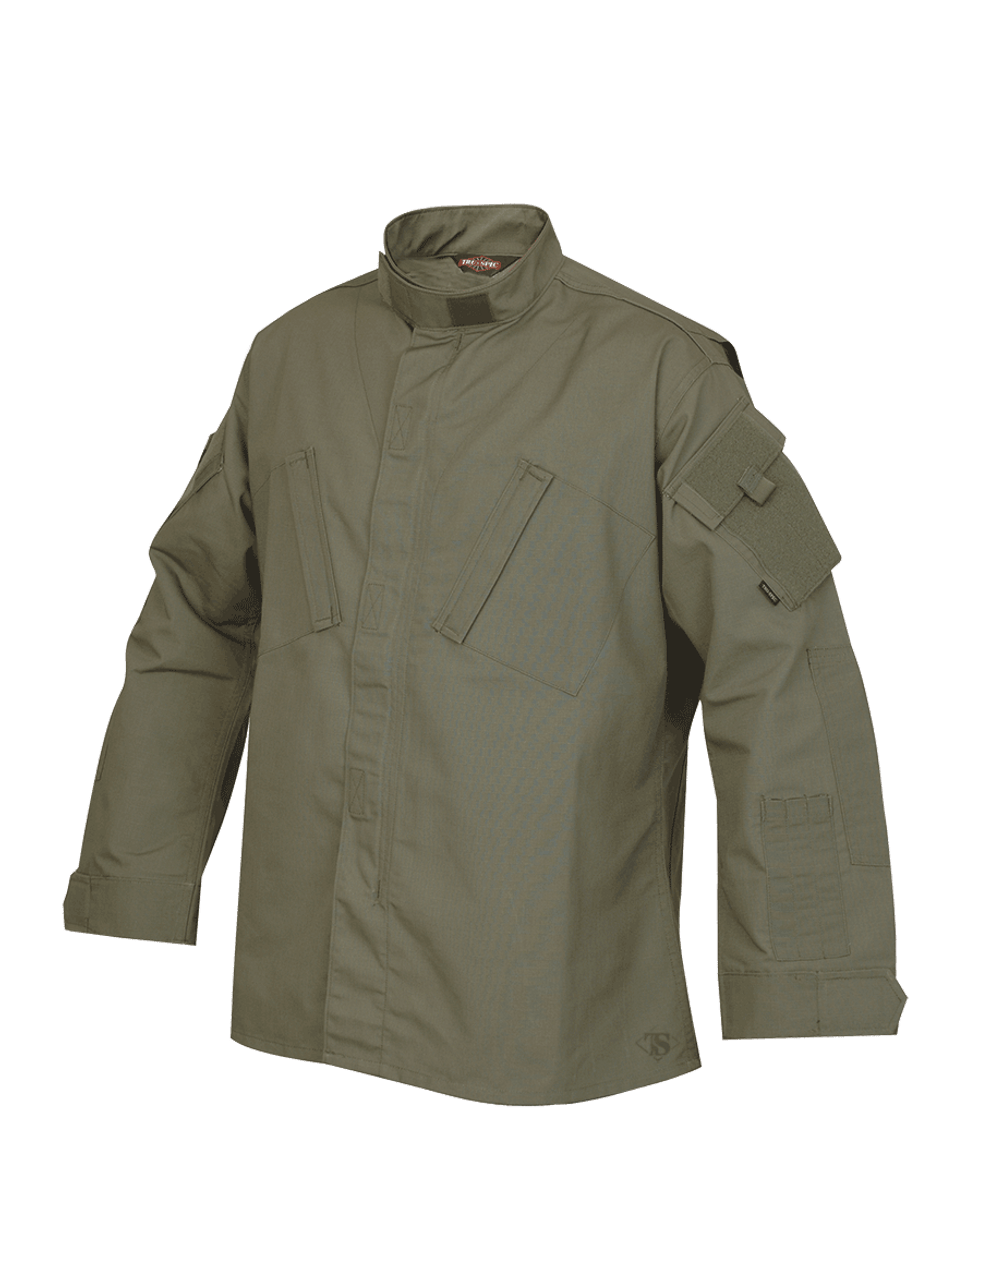 X-L Polyester Cotton Rip-Stop Details about   Tru-Spec 1286006 Tactical Response Uniform Shirt